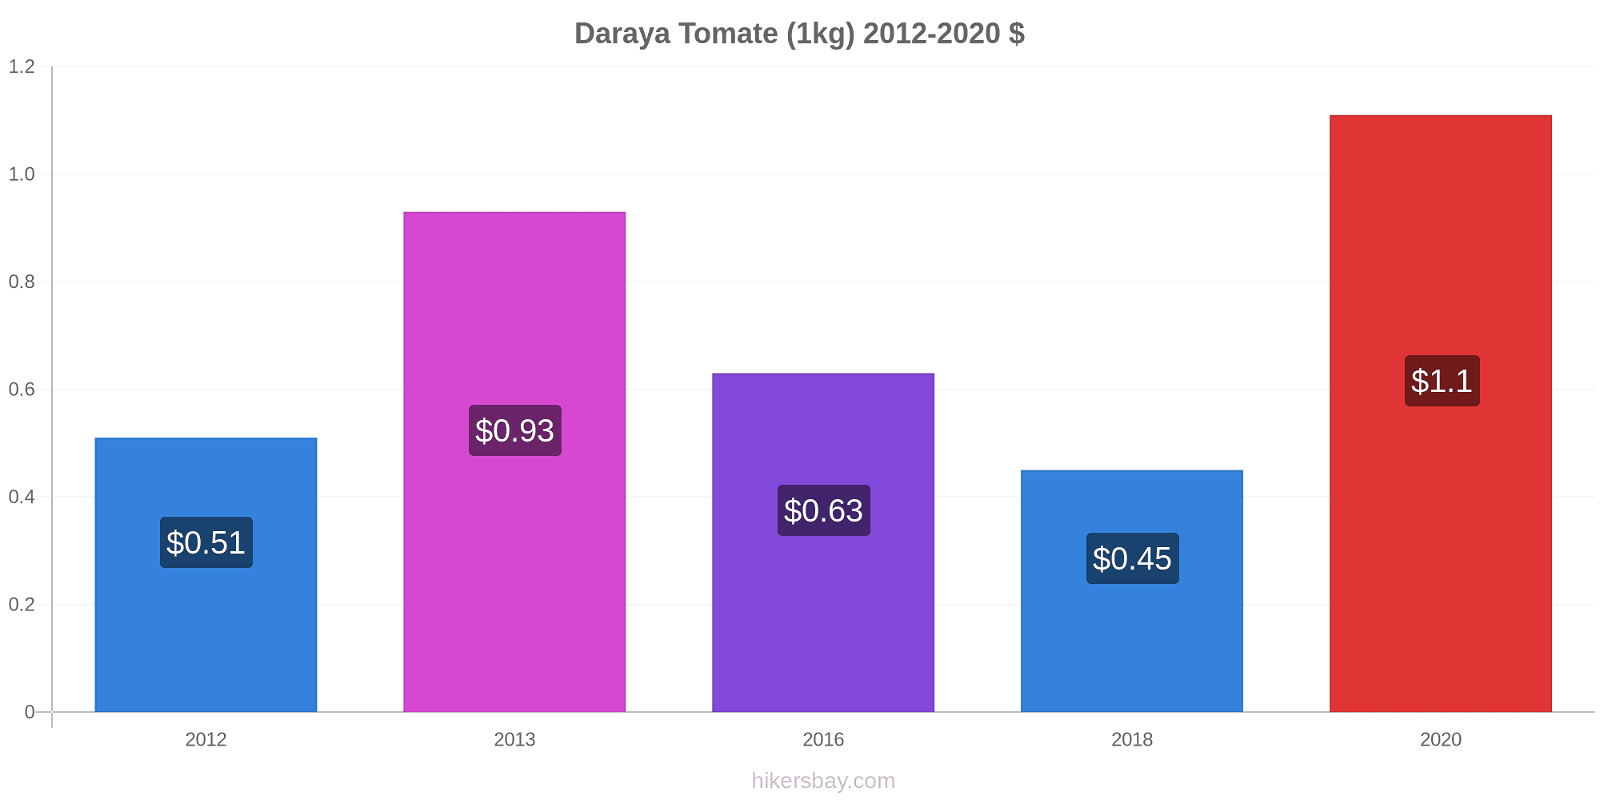 Daraya cambios de precios Tomate (1kg) hikersbay.com